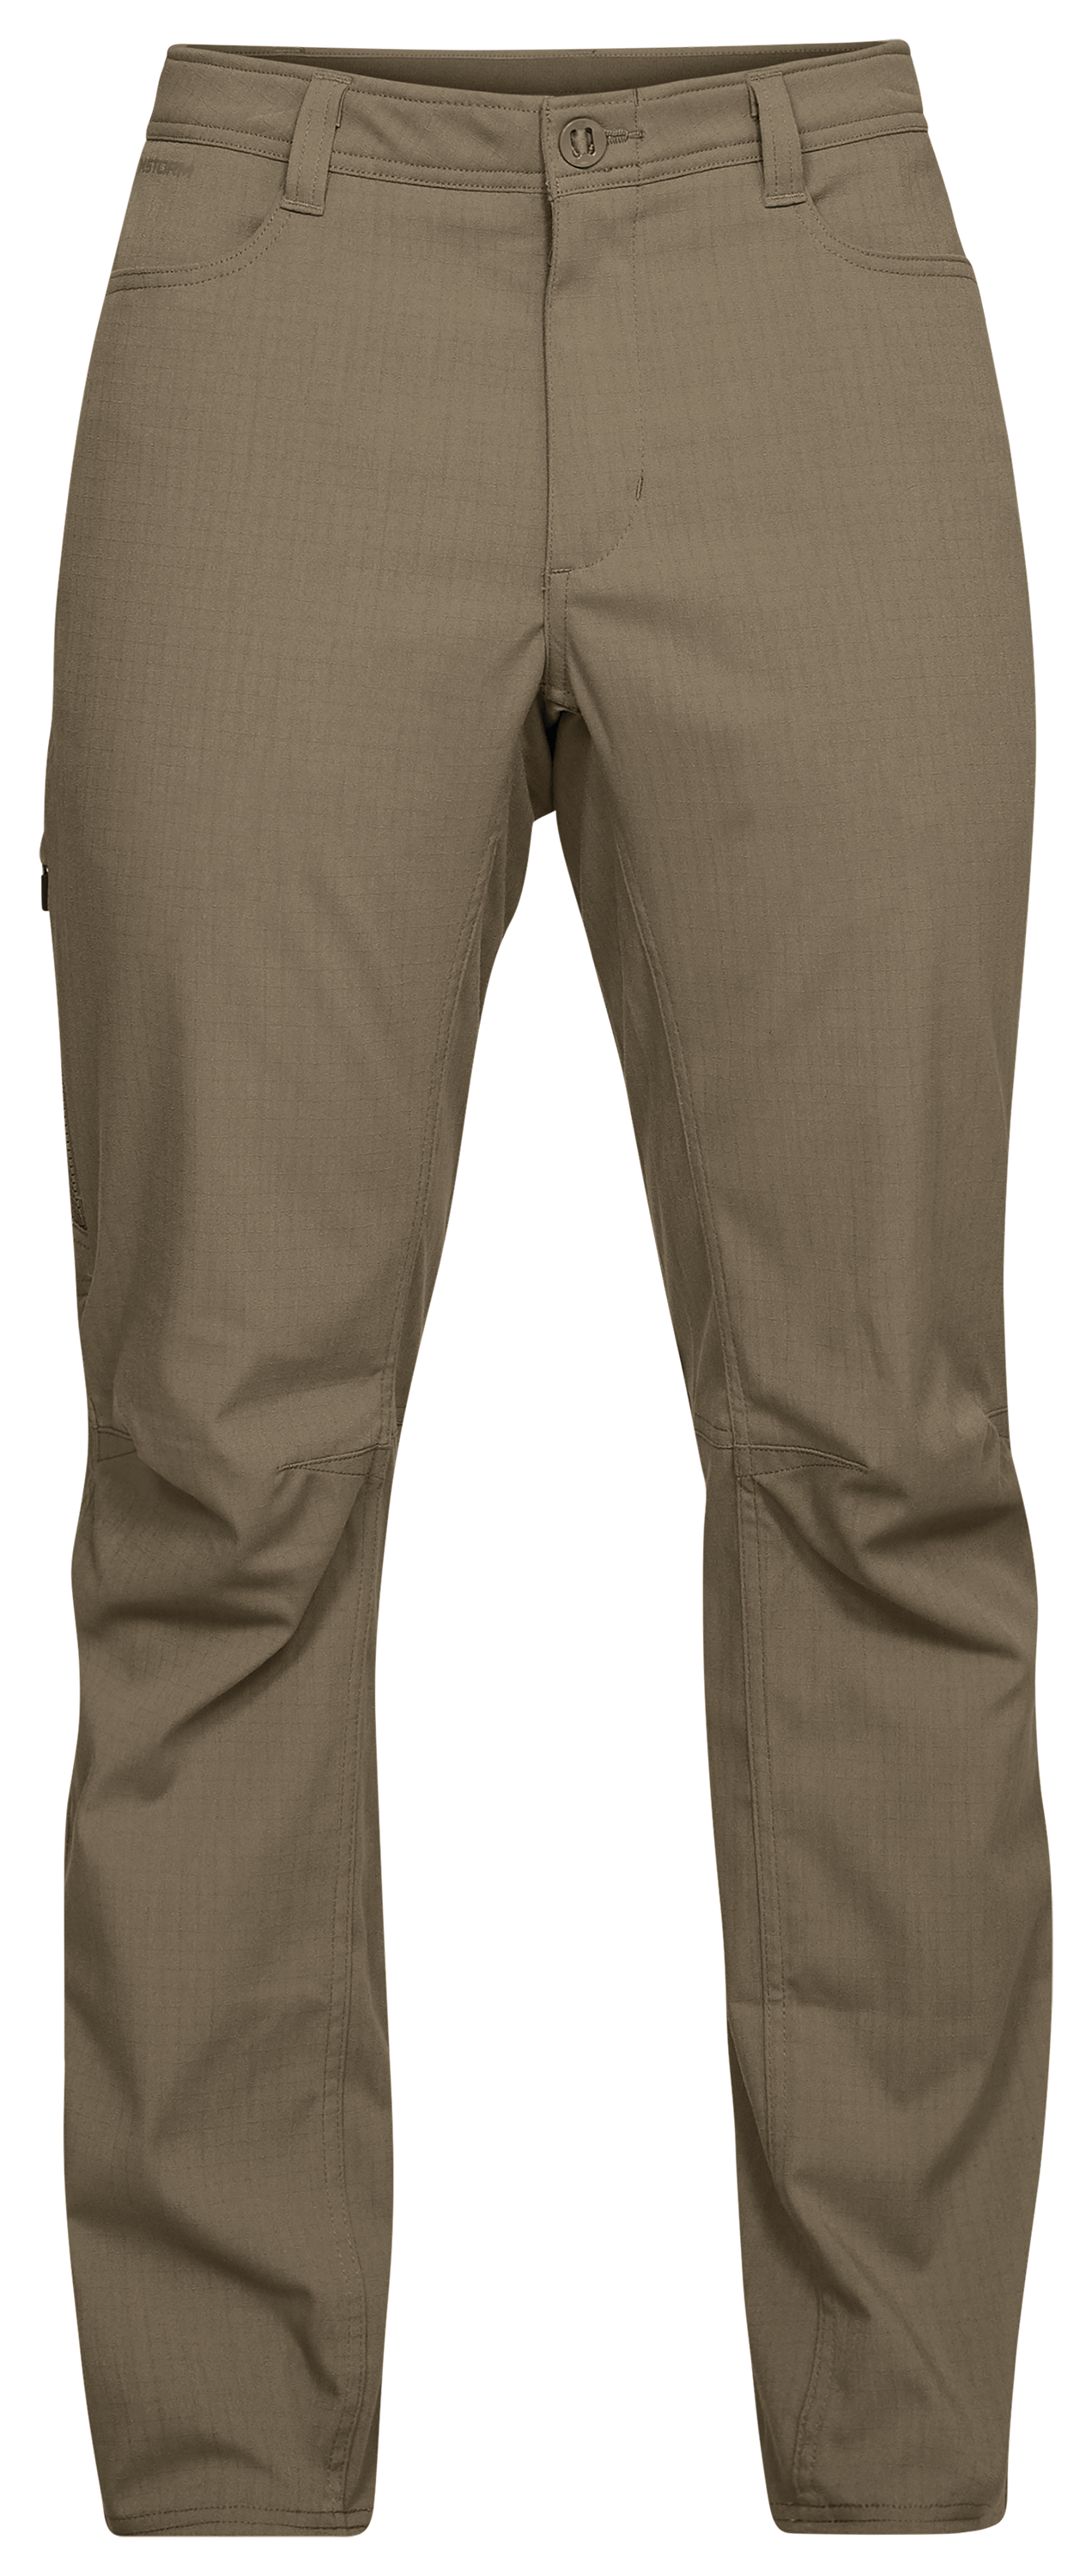 Under Armour Men's Tactical Enduro Pants